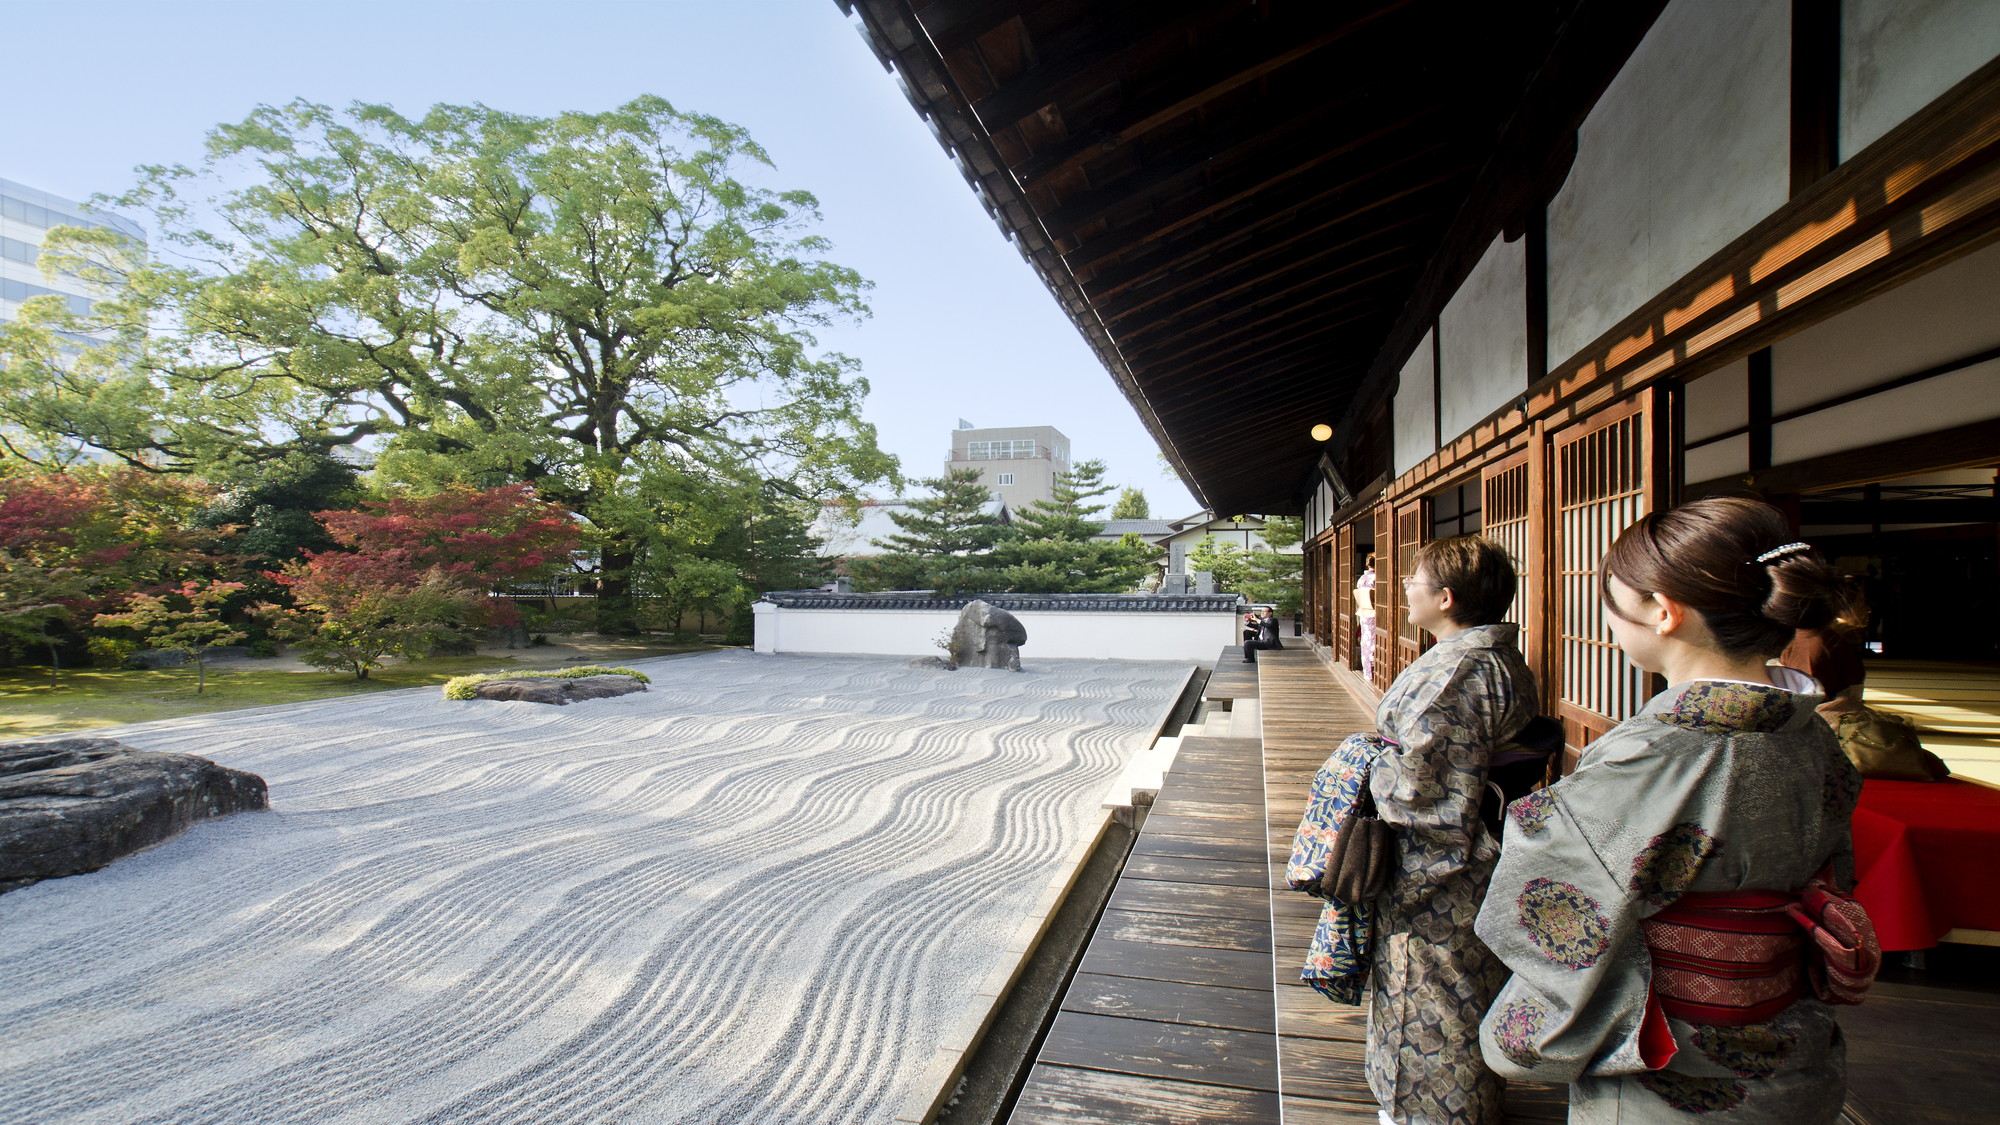 【承天寺】うどん、そば、博多織の発祥の地。日本海を描いた枯山水の日本庭園も見所です。